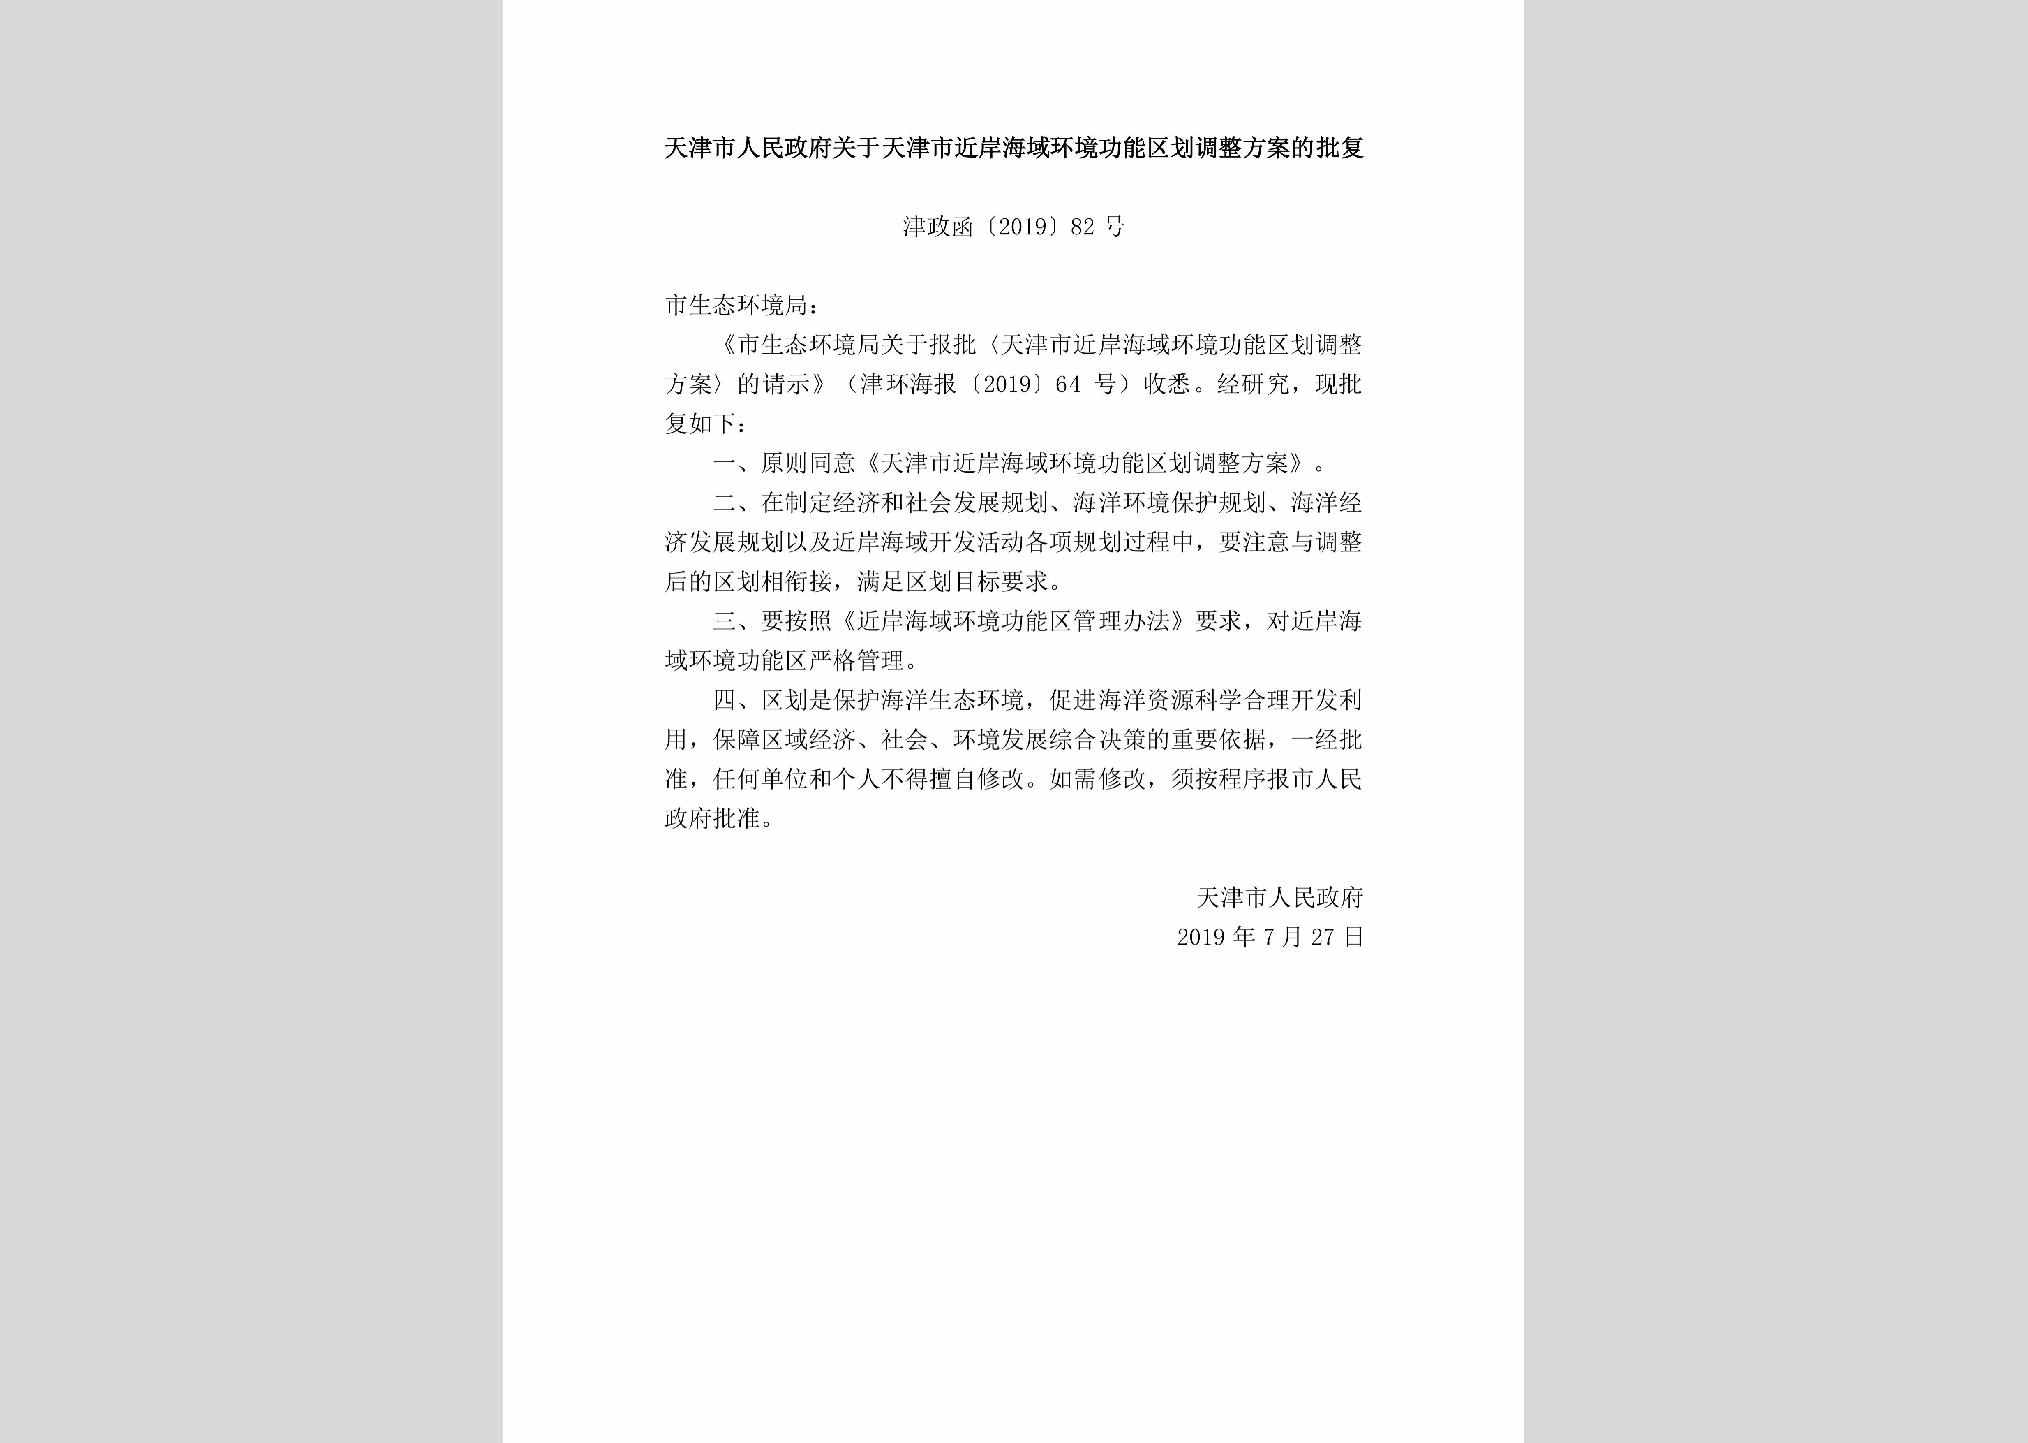 津政函[2019]82号：天津市人民政府关于天津市近岸海域环境功能区划调整方案的批复